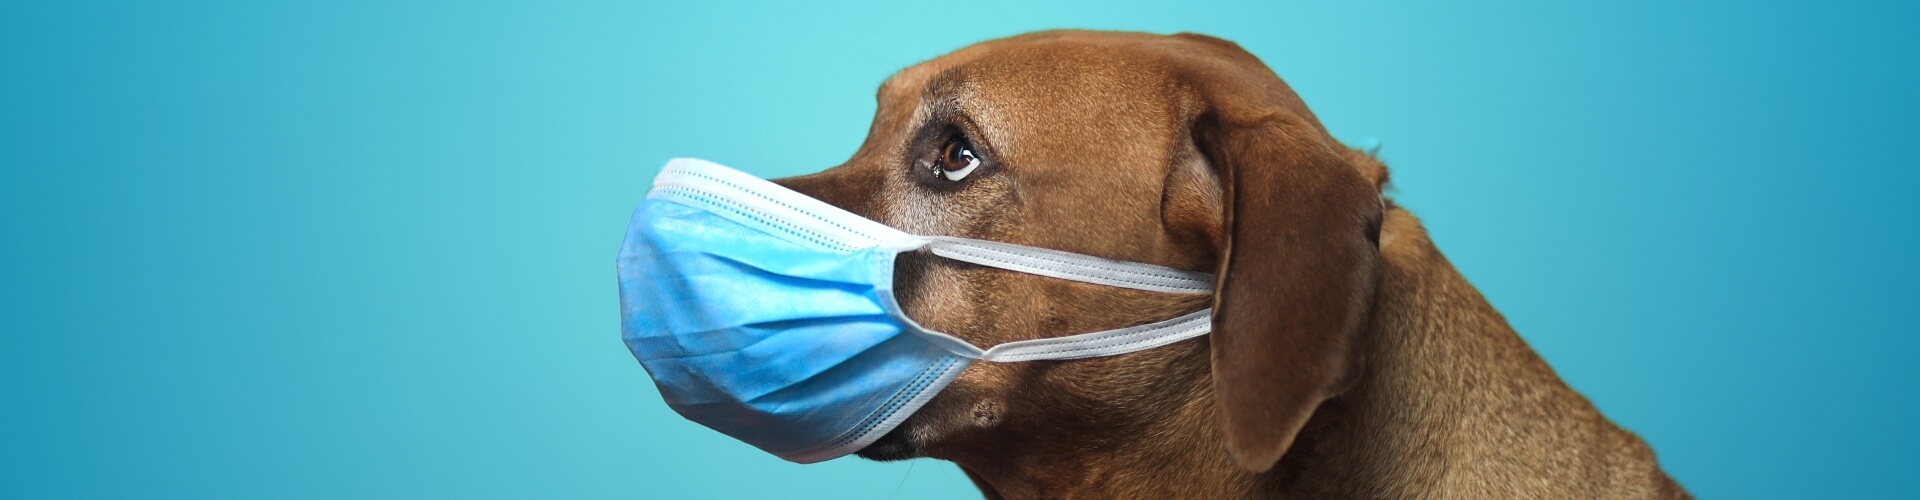 PETPROTECT Magazin: Ist das Coronavirus für meinen Hund gefährlich?